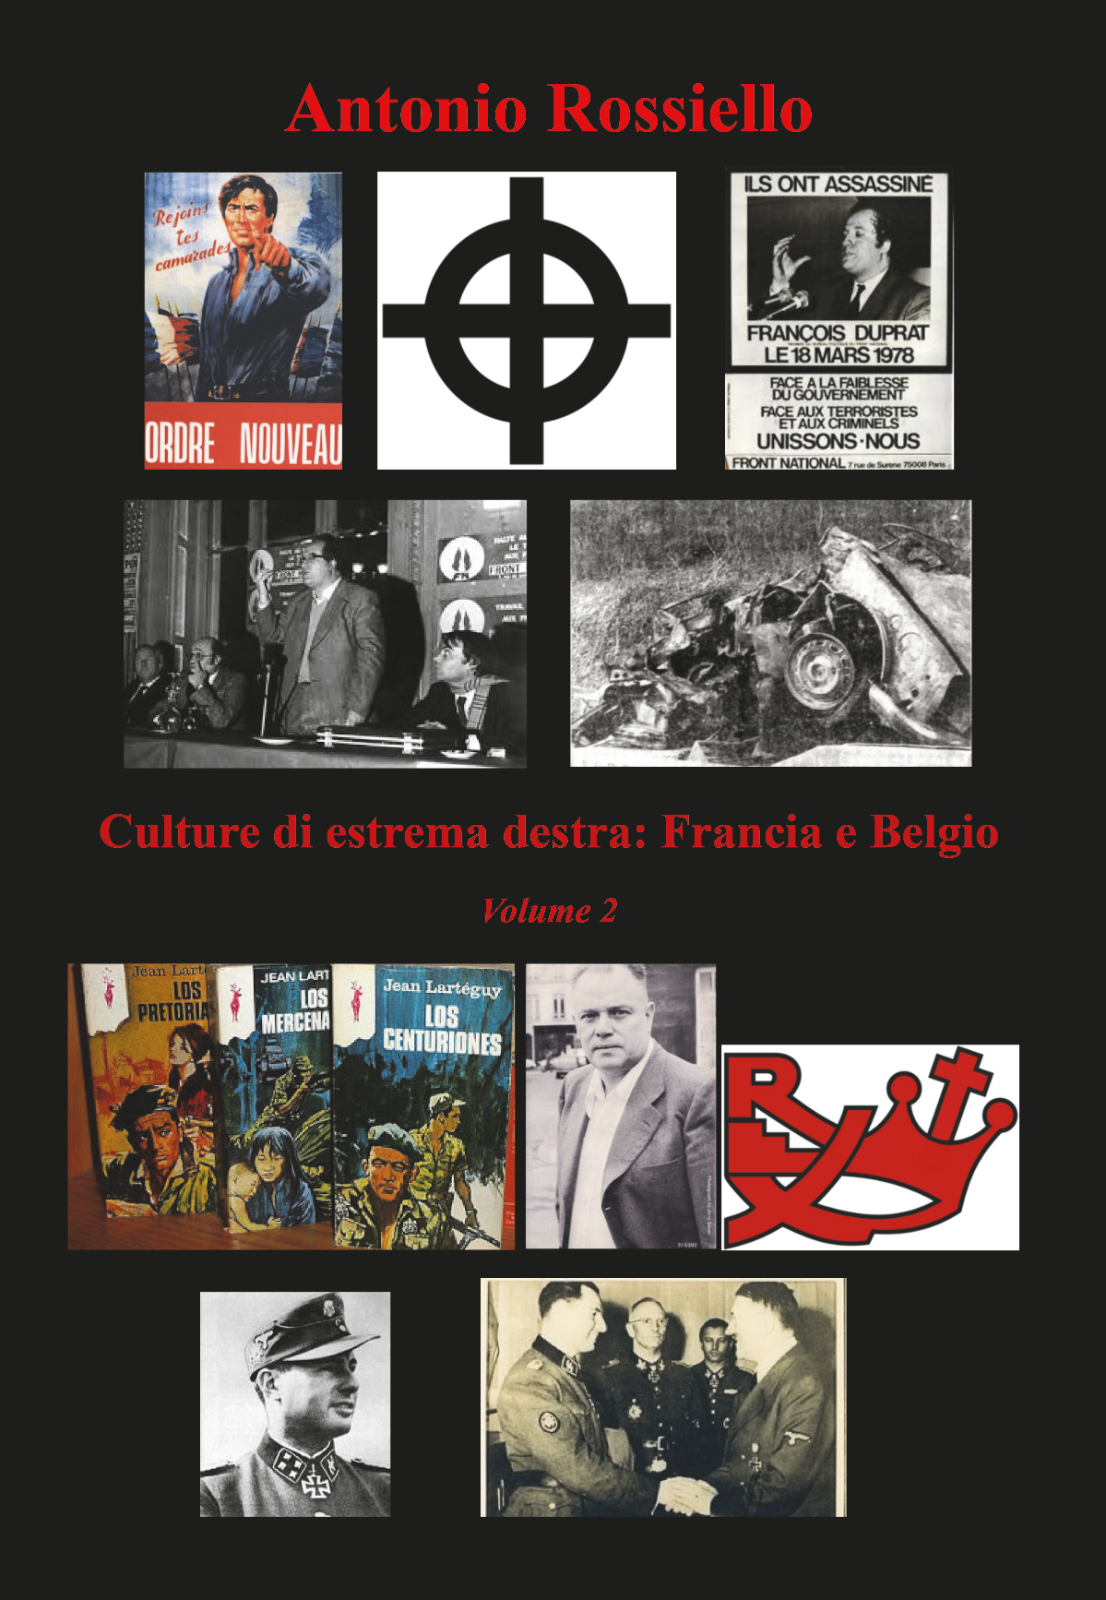 Culture di estrema destra: Francia e Belgio - Volume 2 - Antonio Rossiello - P